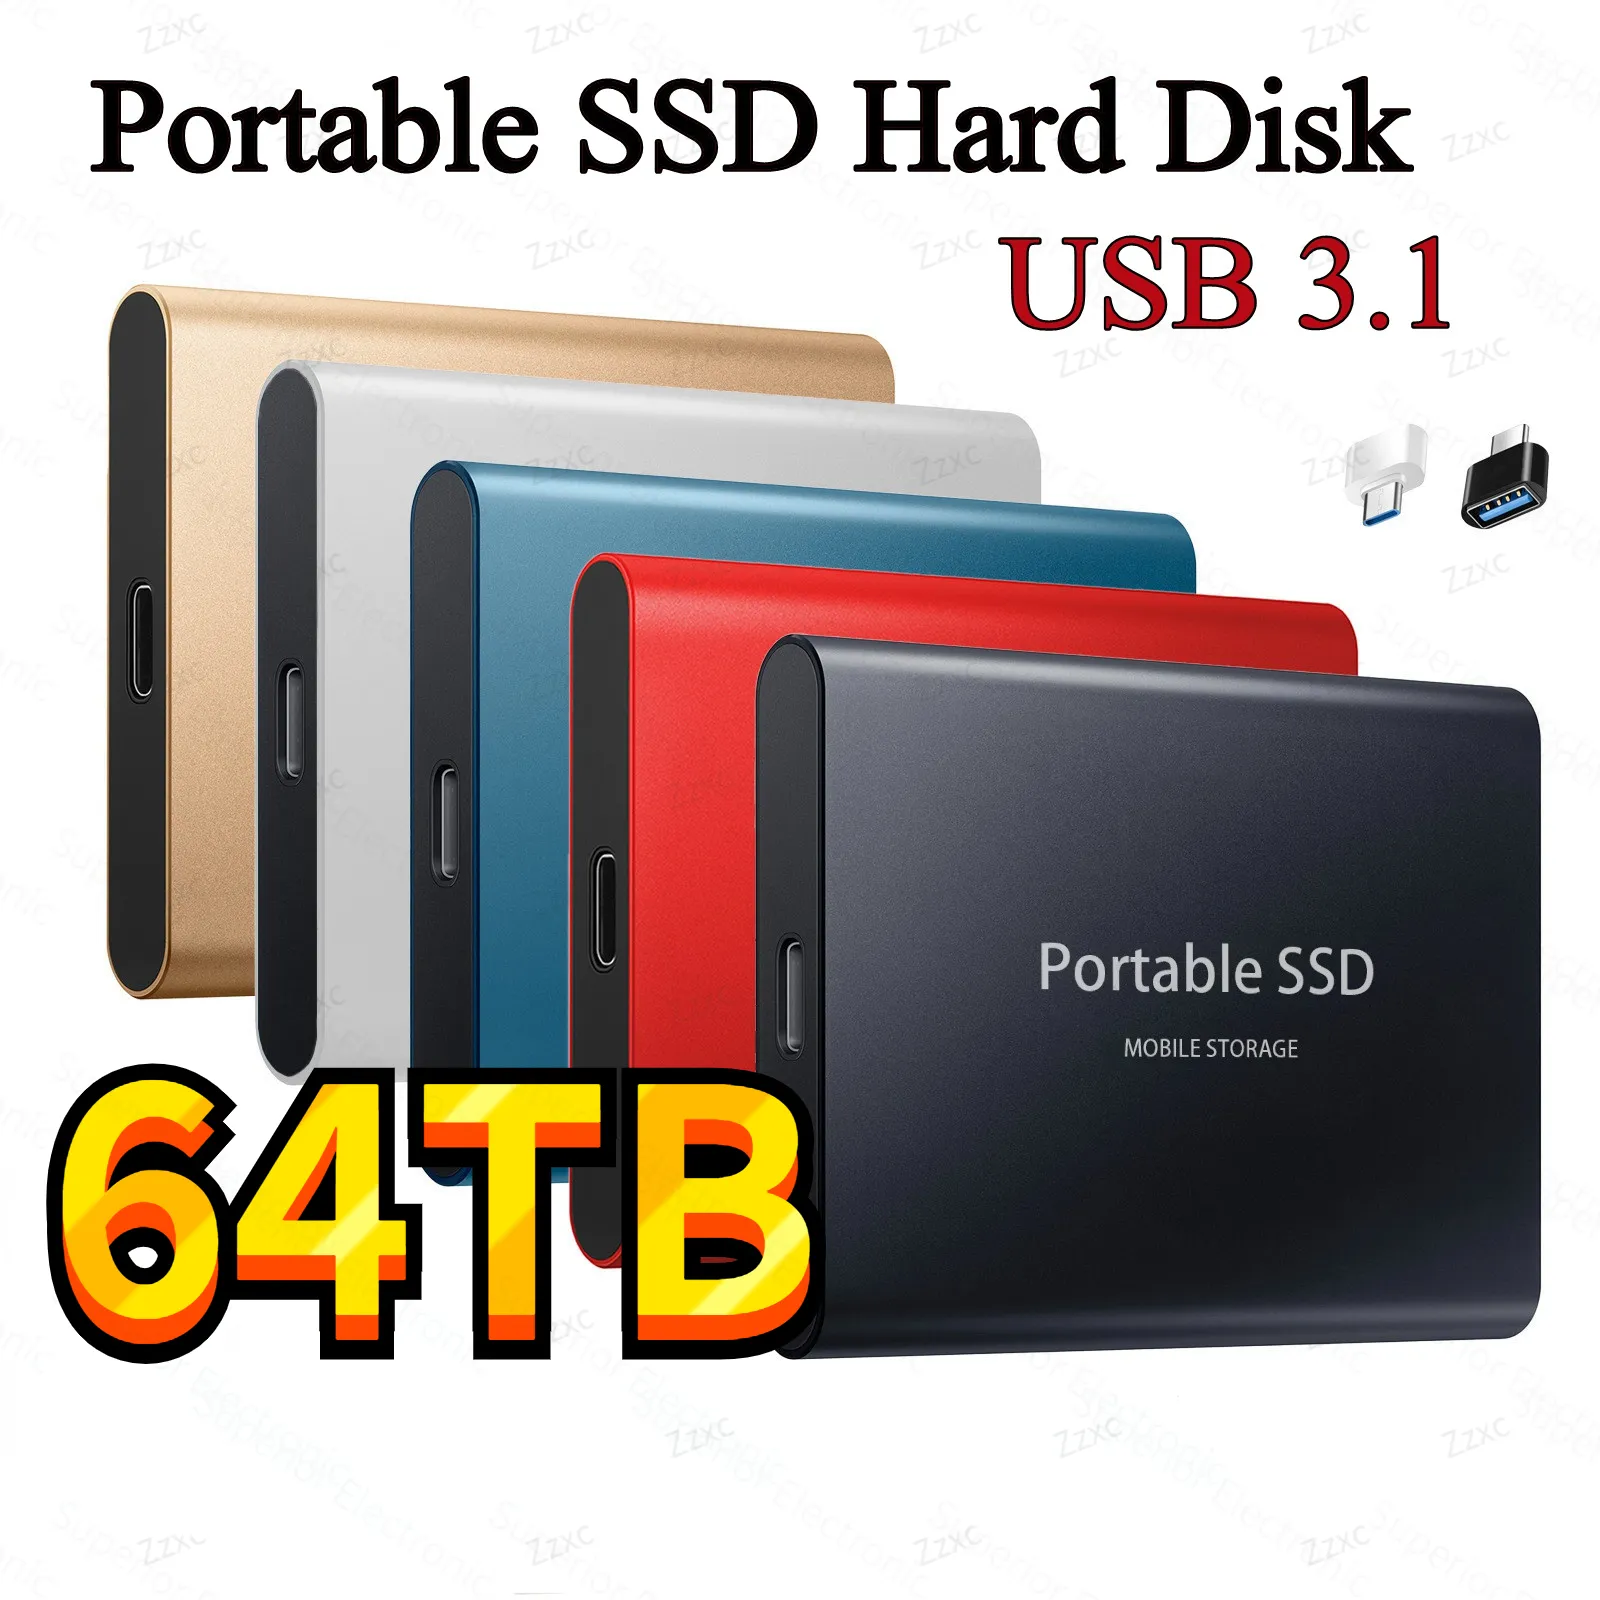 휴대용 SSD C타입 USB 3.1, 노트북 데스크탑용 SSD 플래시 메모리 디스크, 외장 SSD M.2 하드 드라이브, 60TB, 30TB, 16TB, 8TB, 4TB